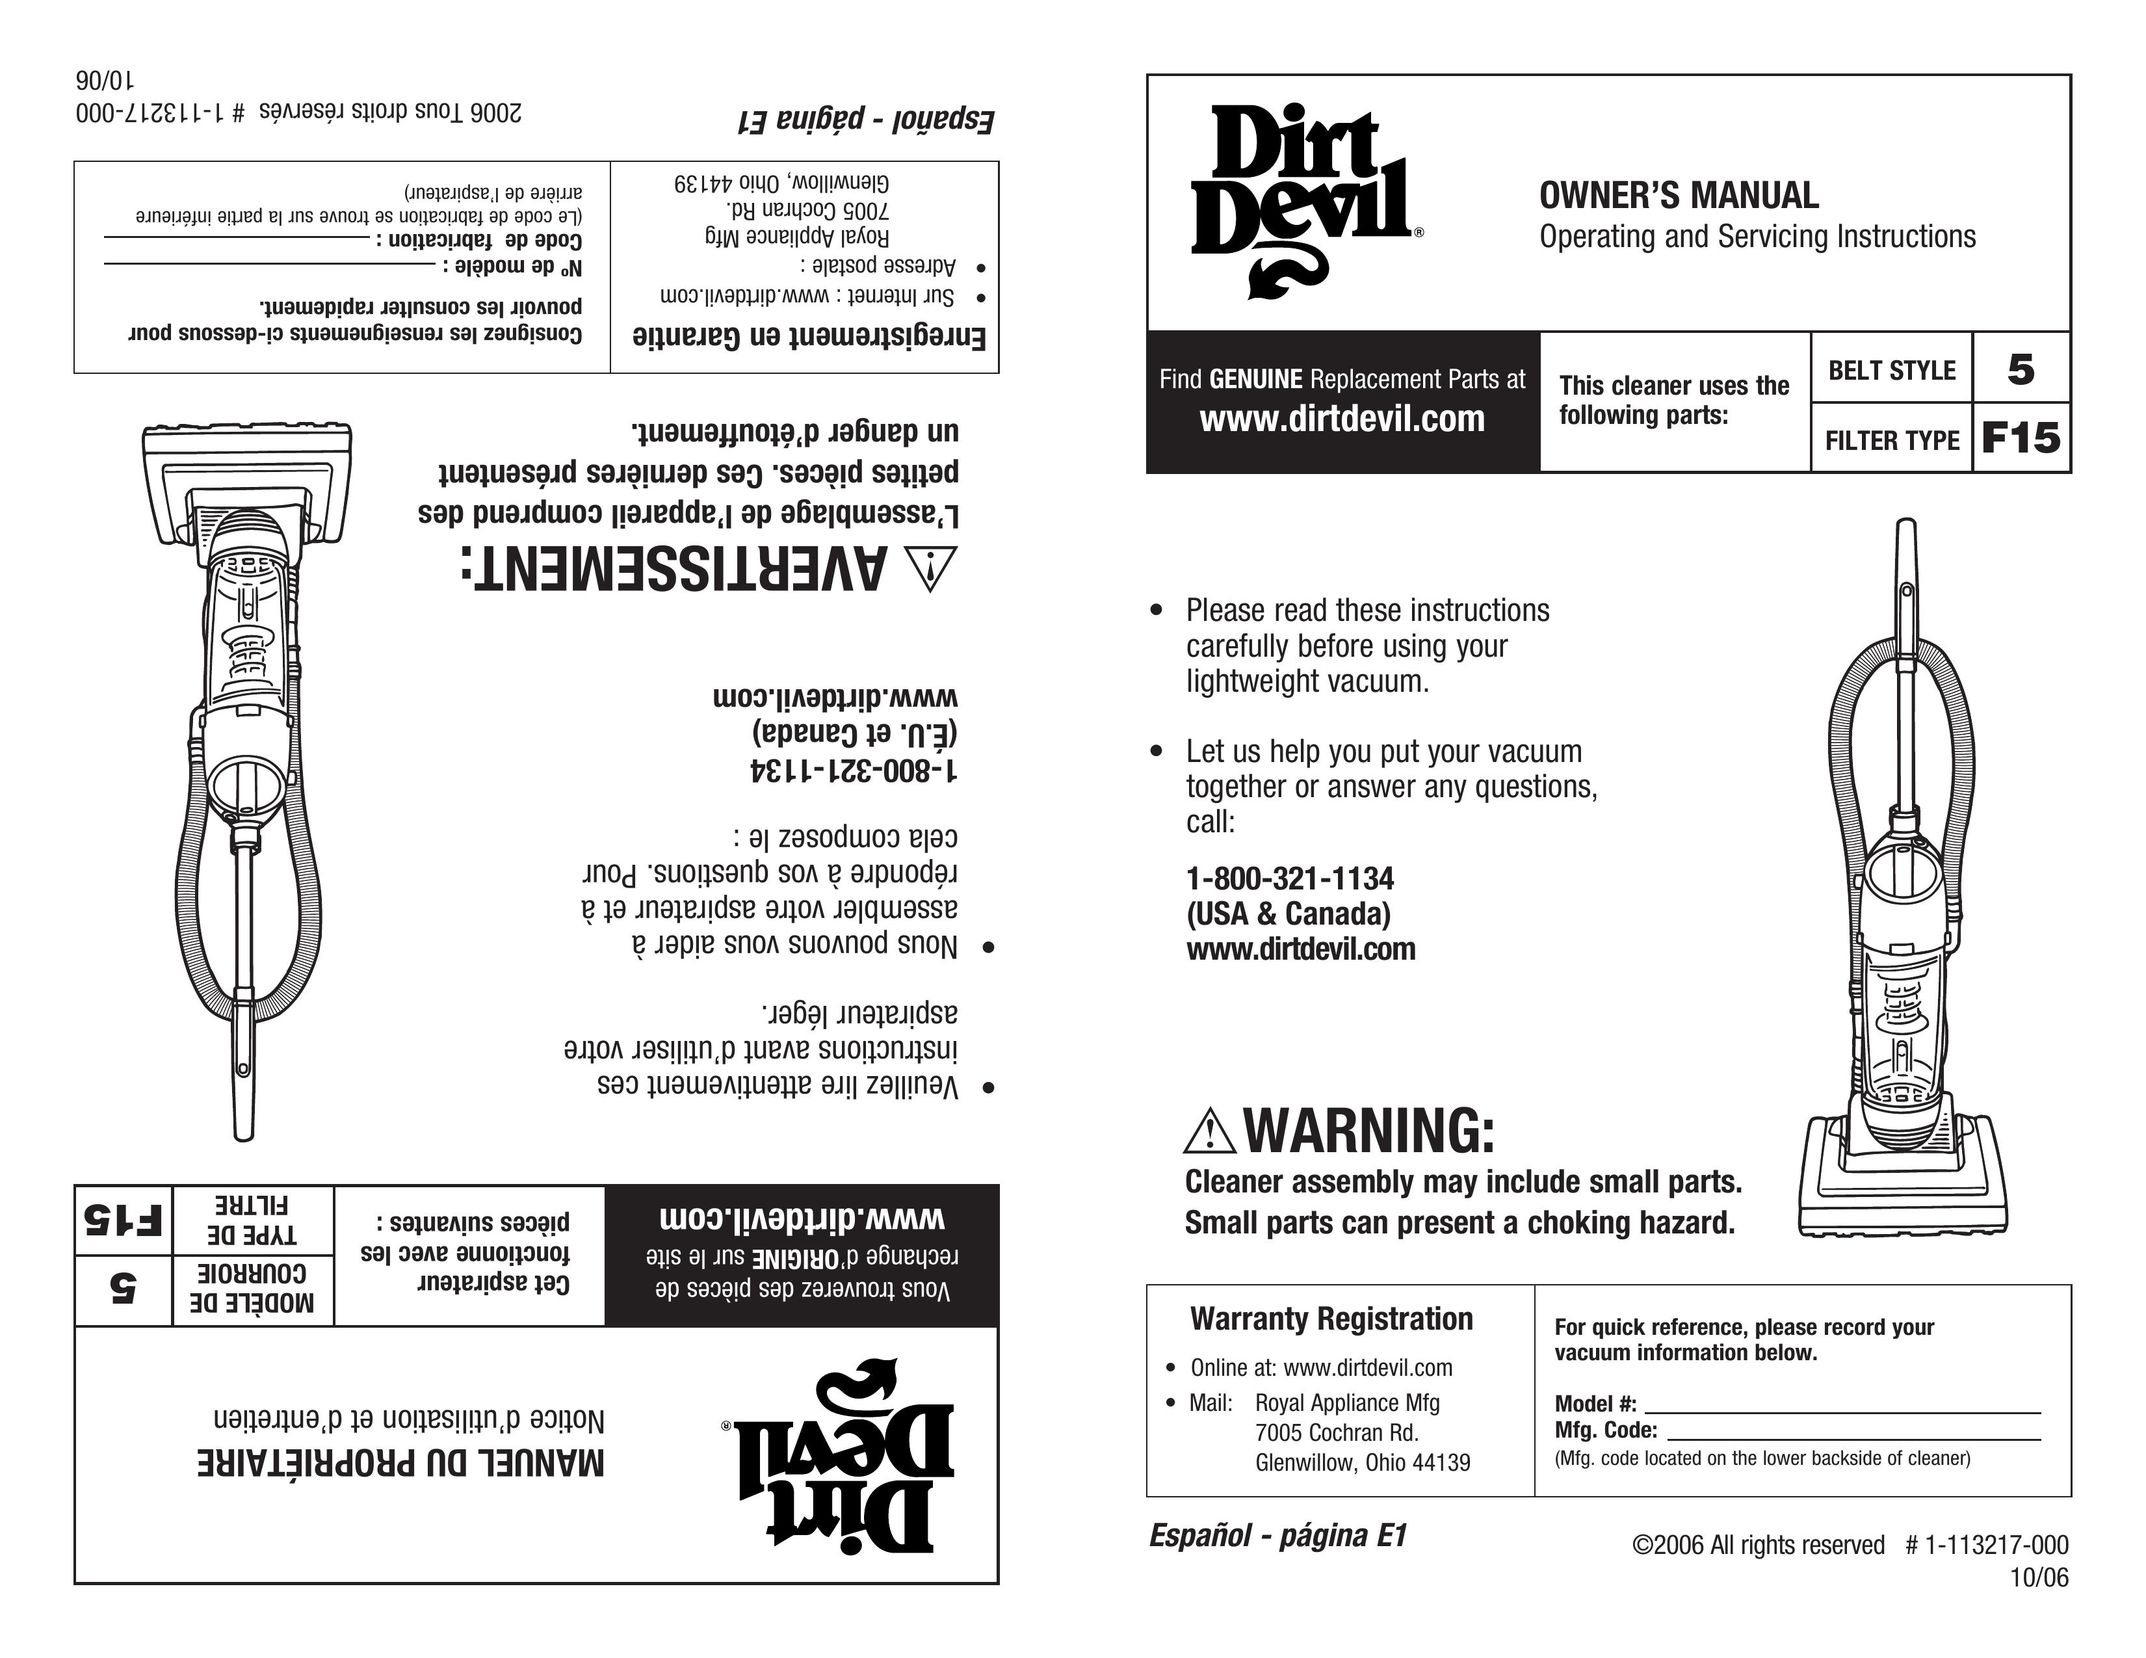 Dirt Devil 1-113217-000 Vacuum Cleaner User Manual